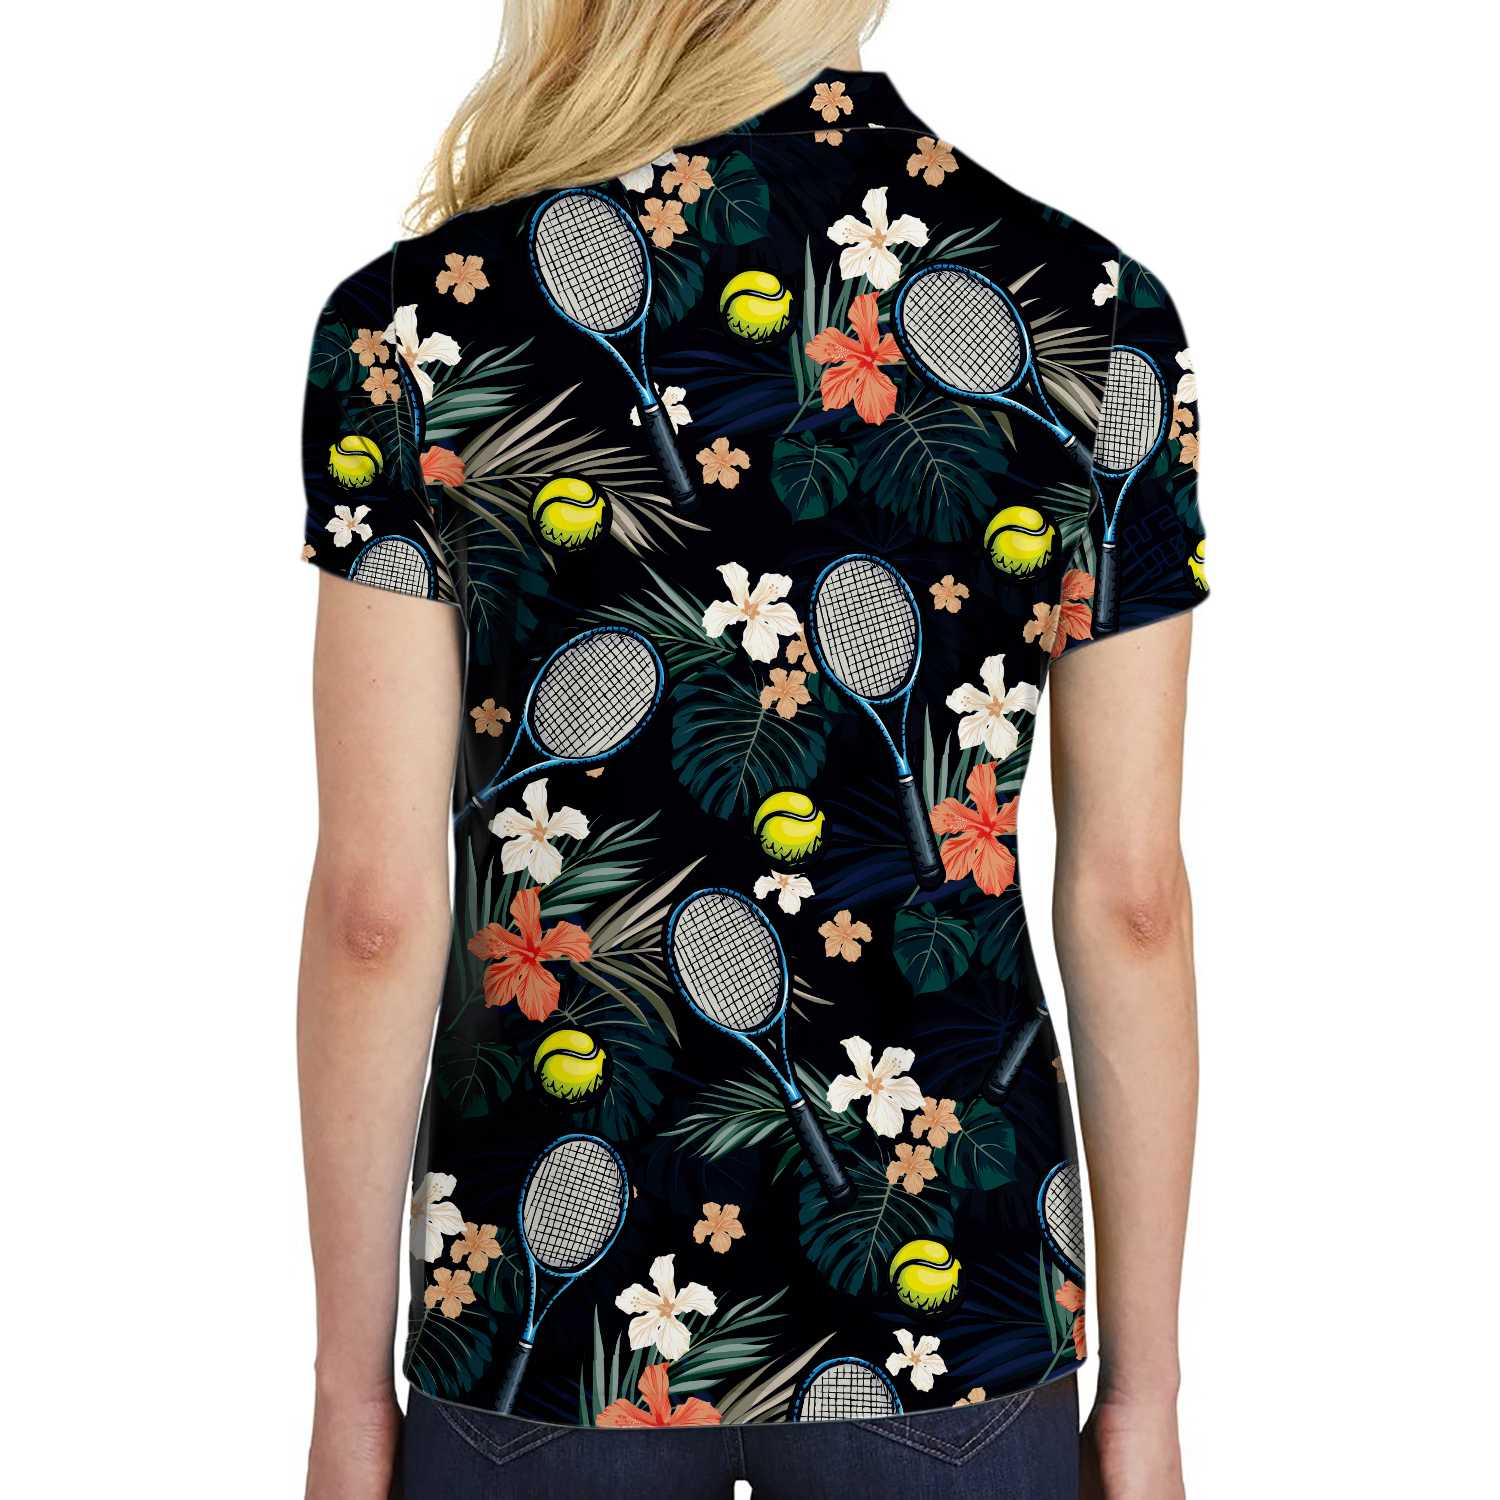 Tropical Floral Tennis Shirt For Women Short Sleeve Women Polo Shirt Coolspod